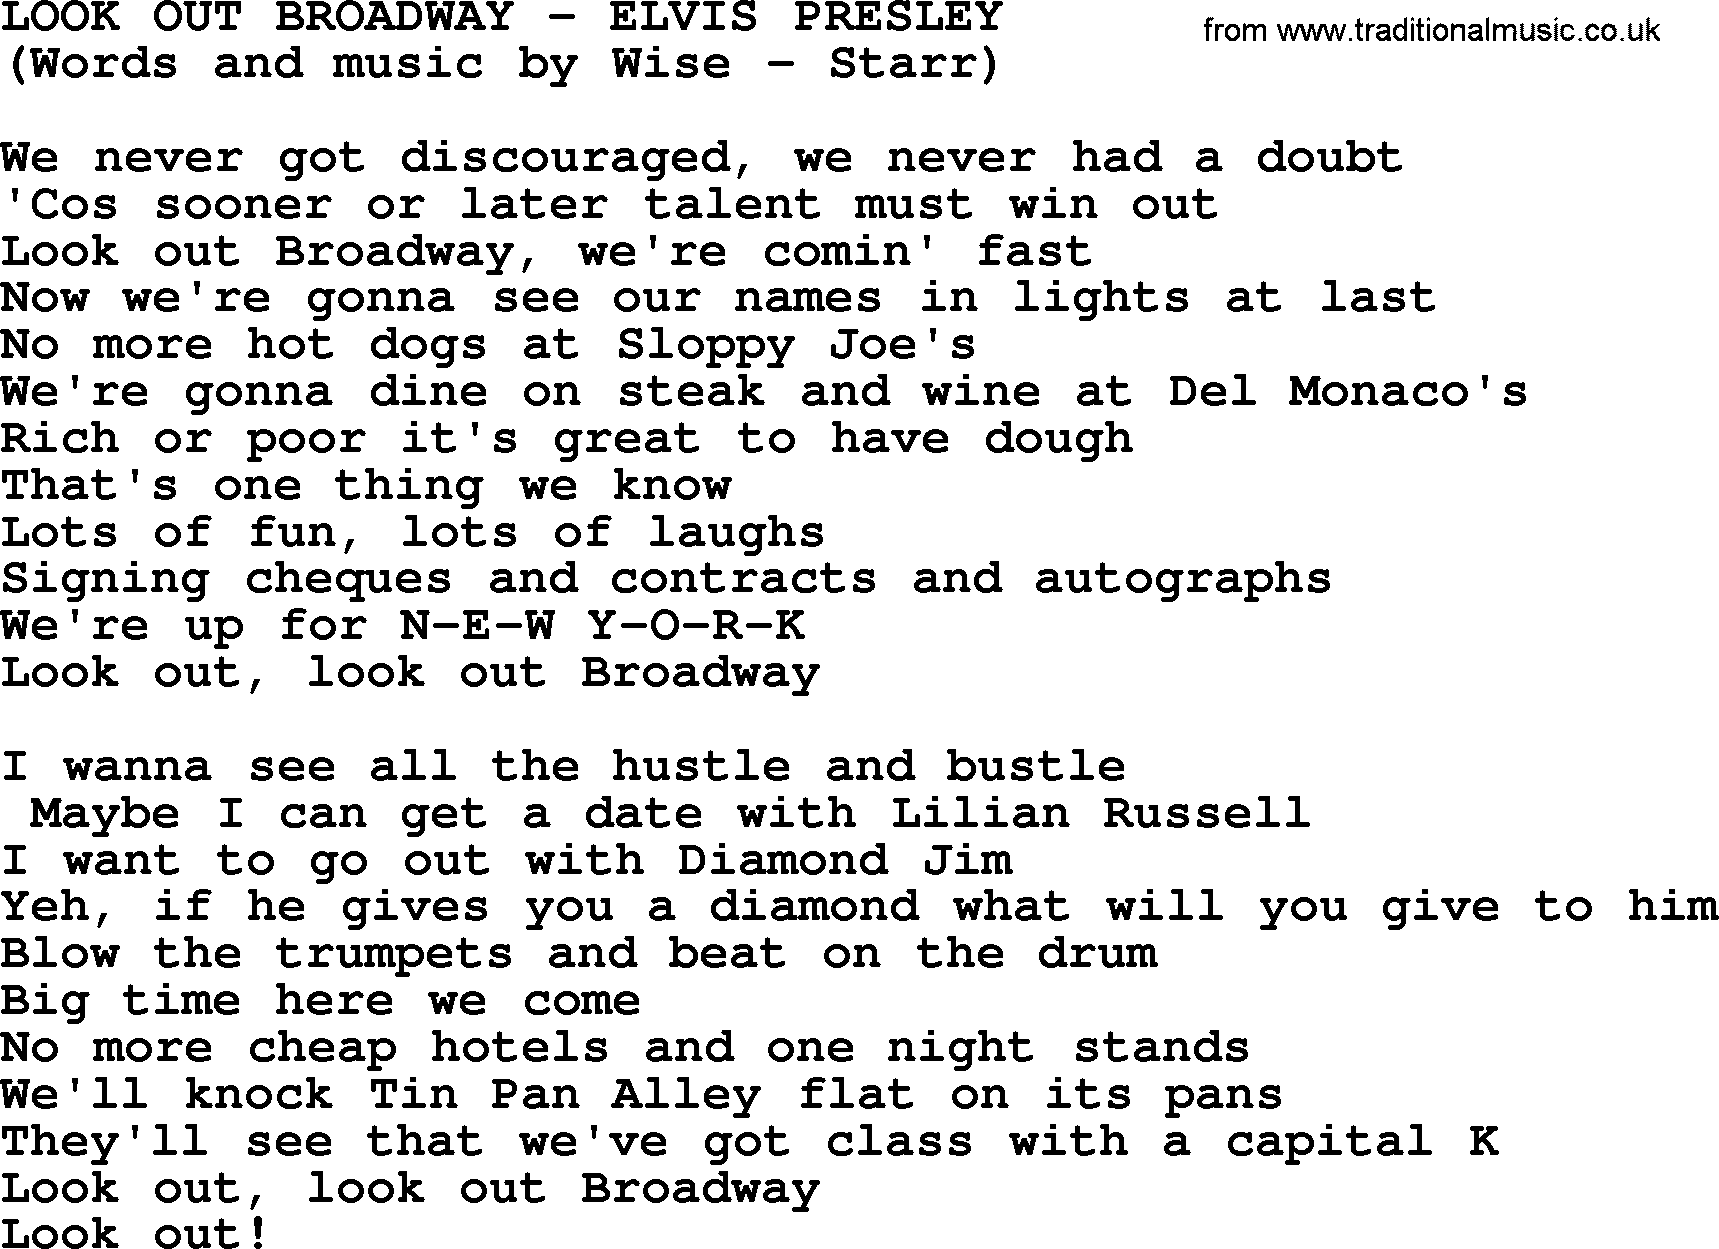 Elvis Presley song: Look Out Broadway lyrics